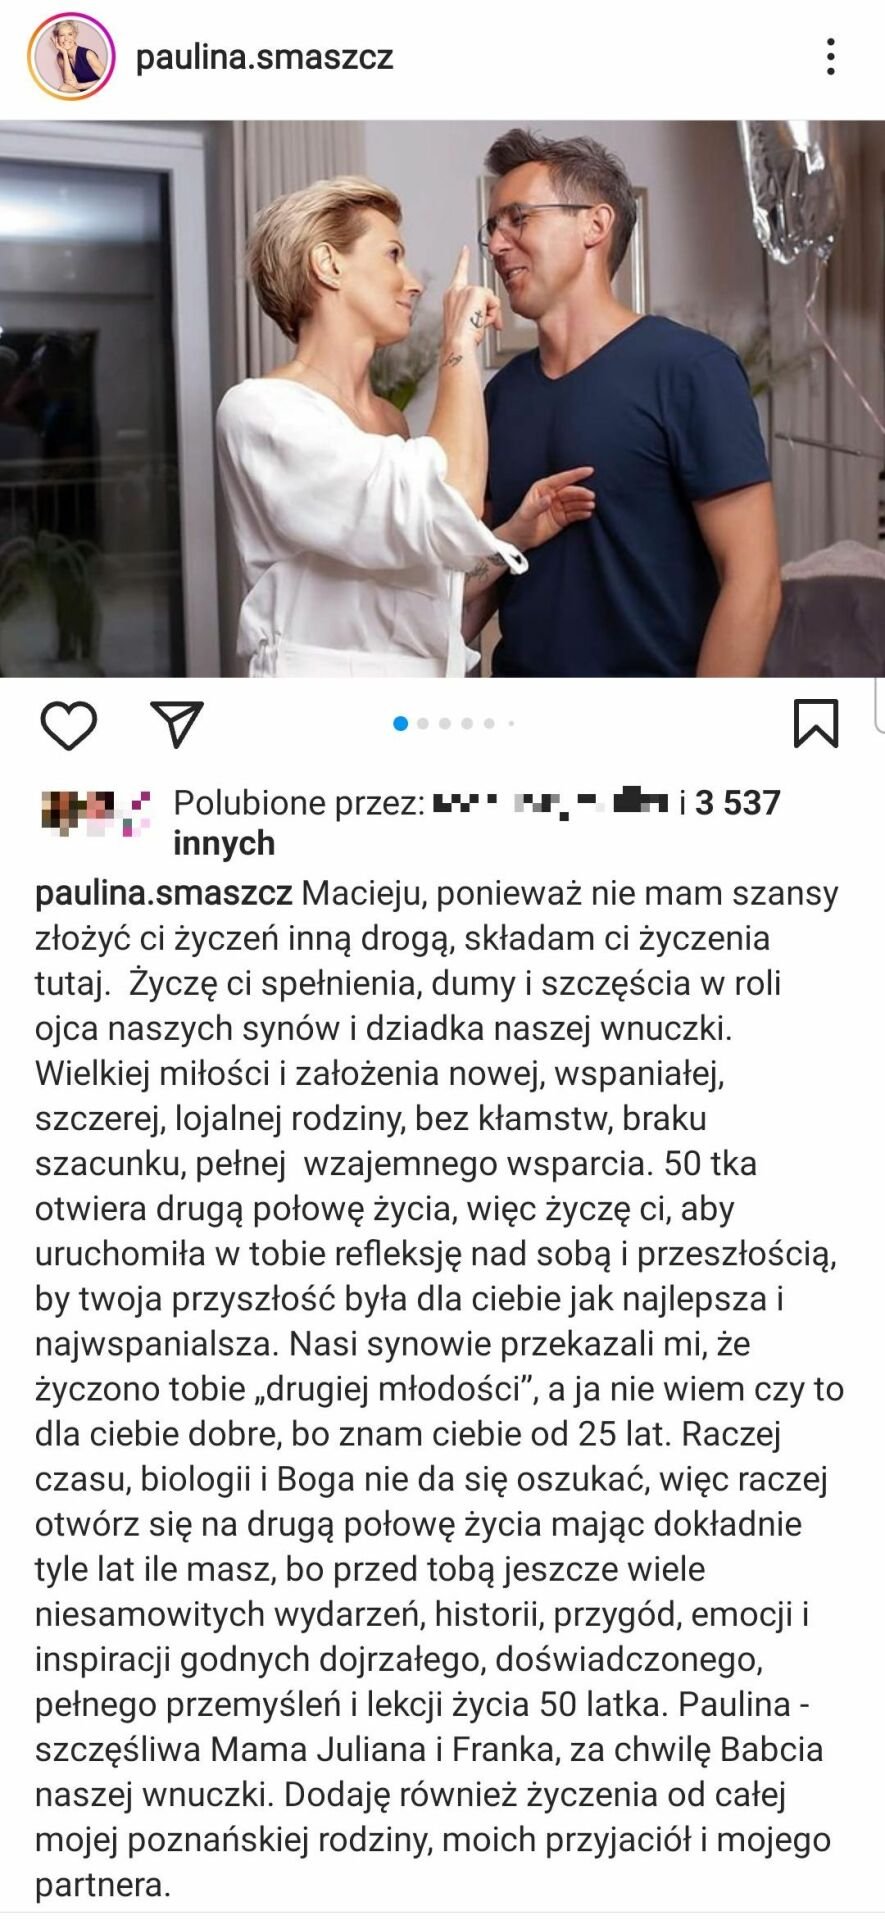 Paulina Smaszcz, życzenia dla Macieja Kurzajewskiego, Instagram